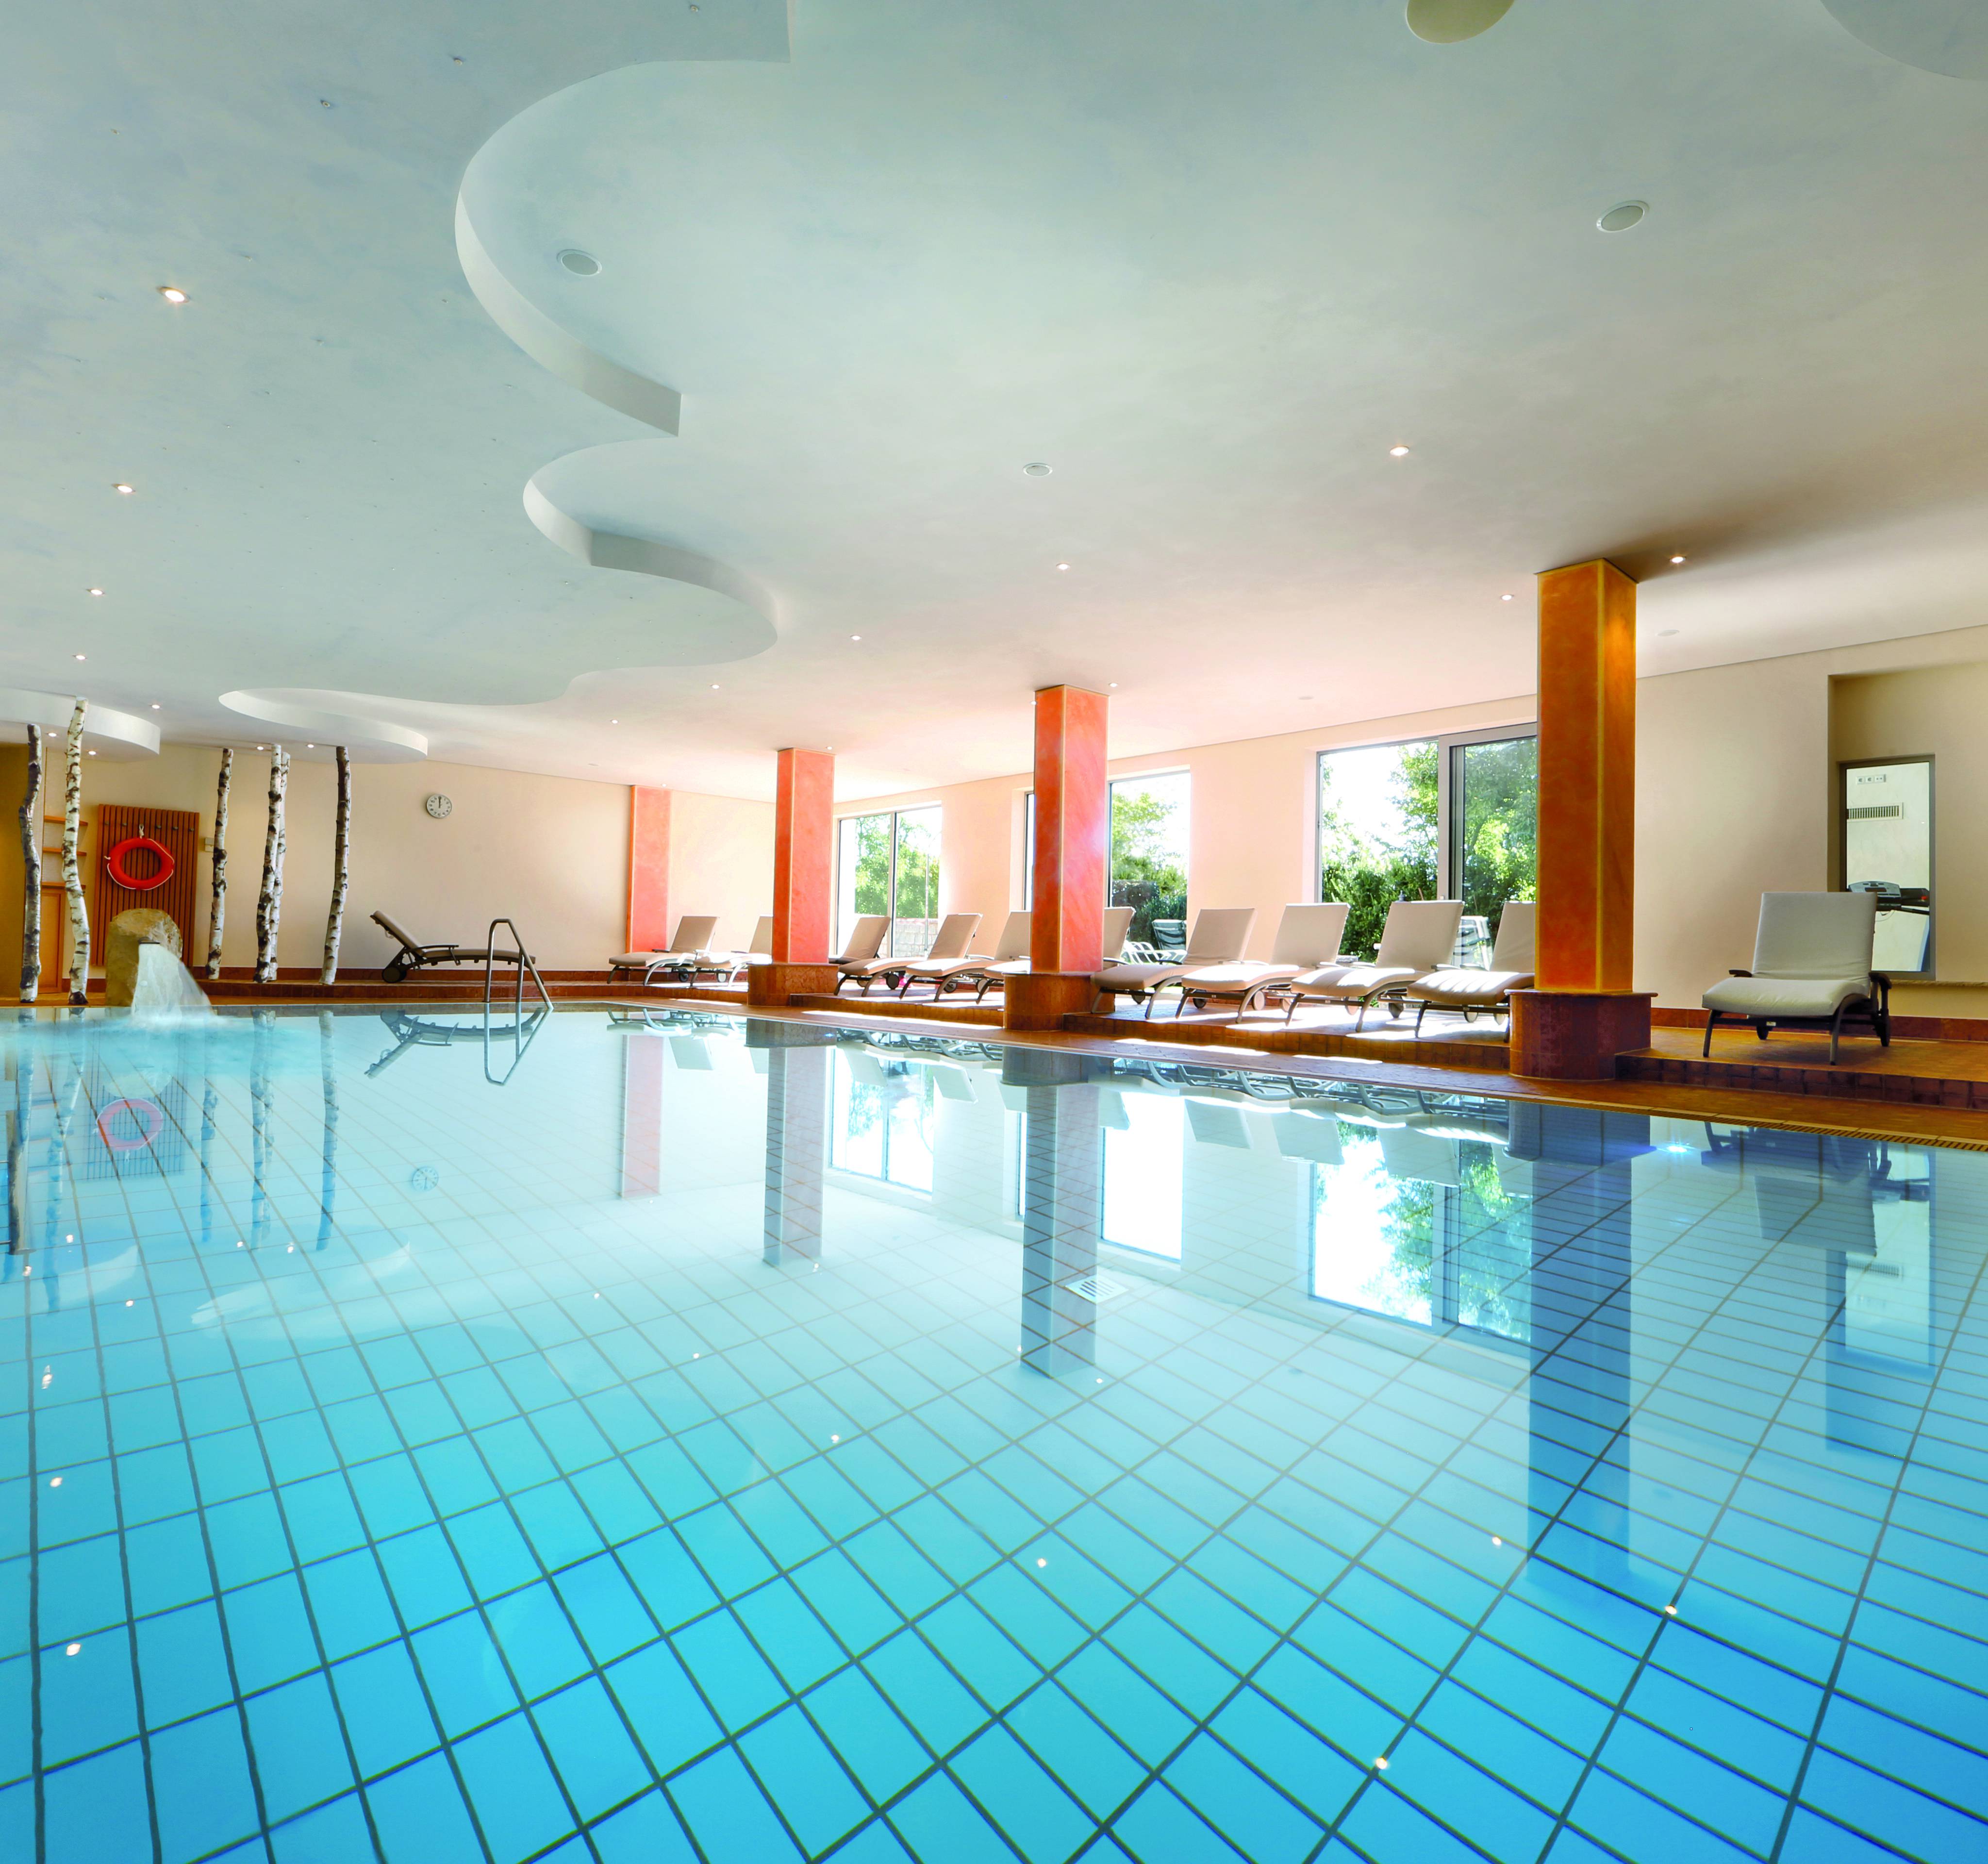 The indoor pool: Hotel Grüner Wald - Hotel Grüner Wald